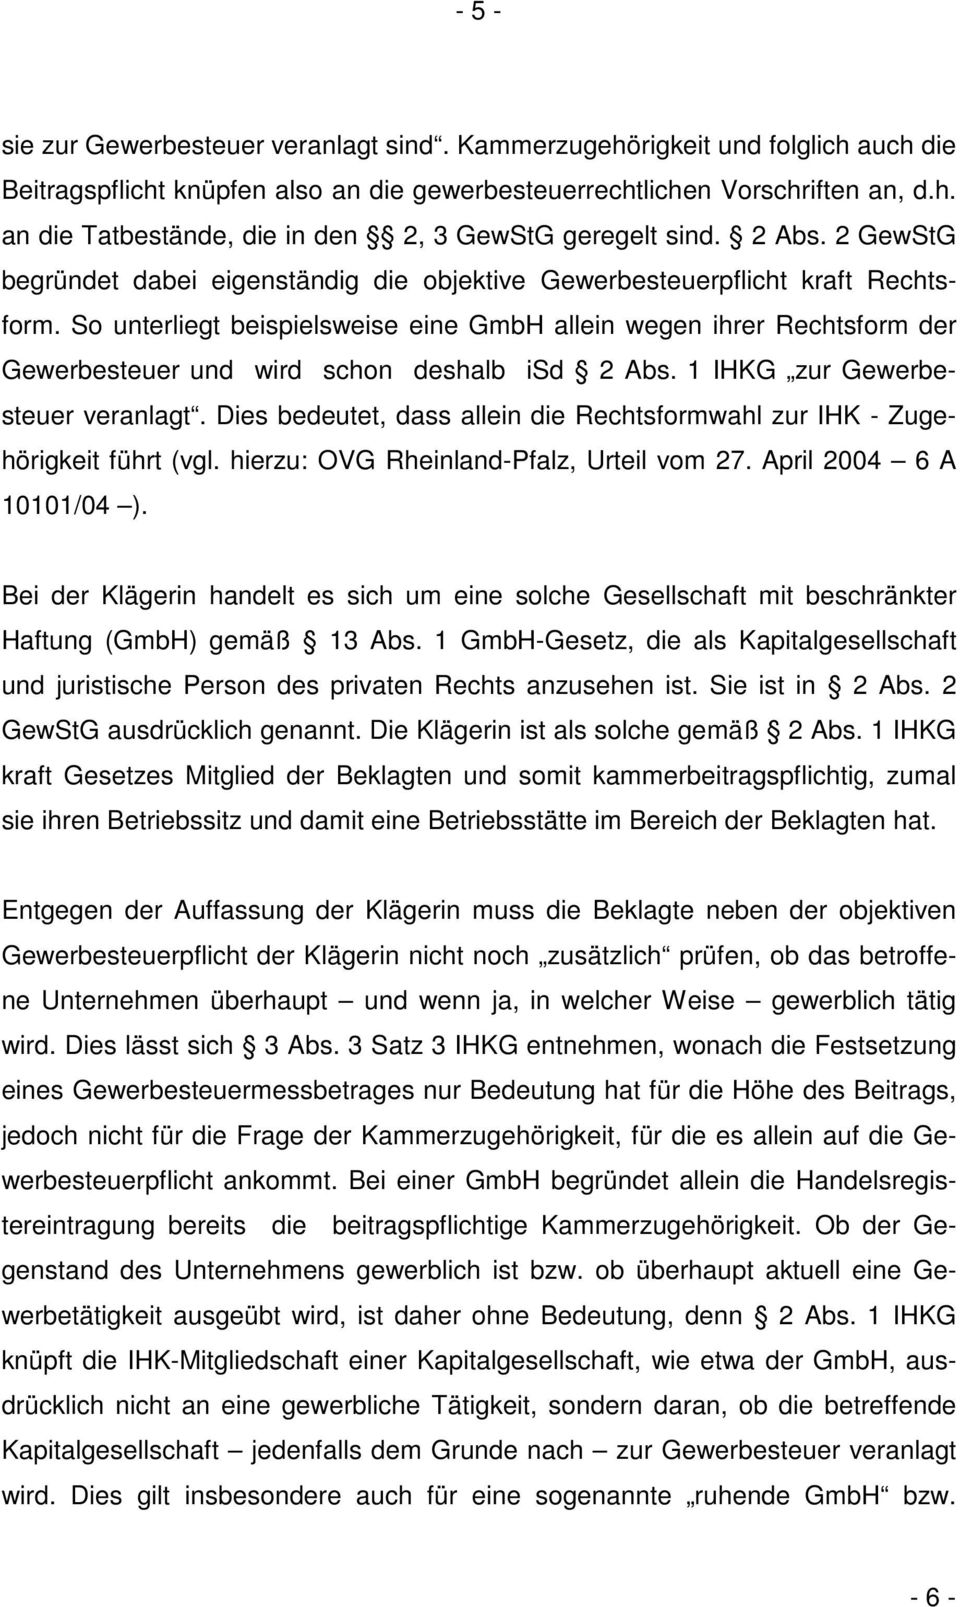 So unterliegt beispielsweise eine GmbH allein wegen ihrer Rechtsform der Gewerbesteuer und wird schon deshalb isd 2 Abs. 1 IHKG zur Gewerbesteuer veranlagt.